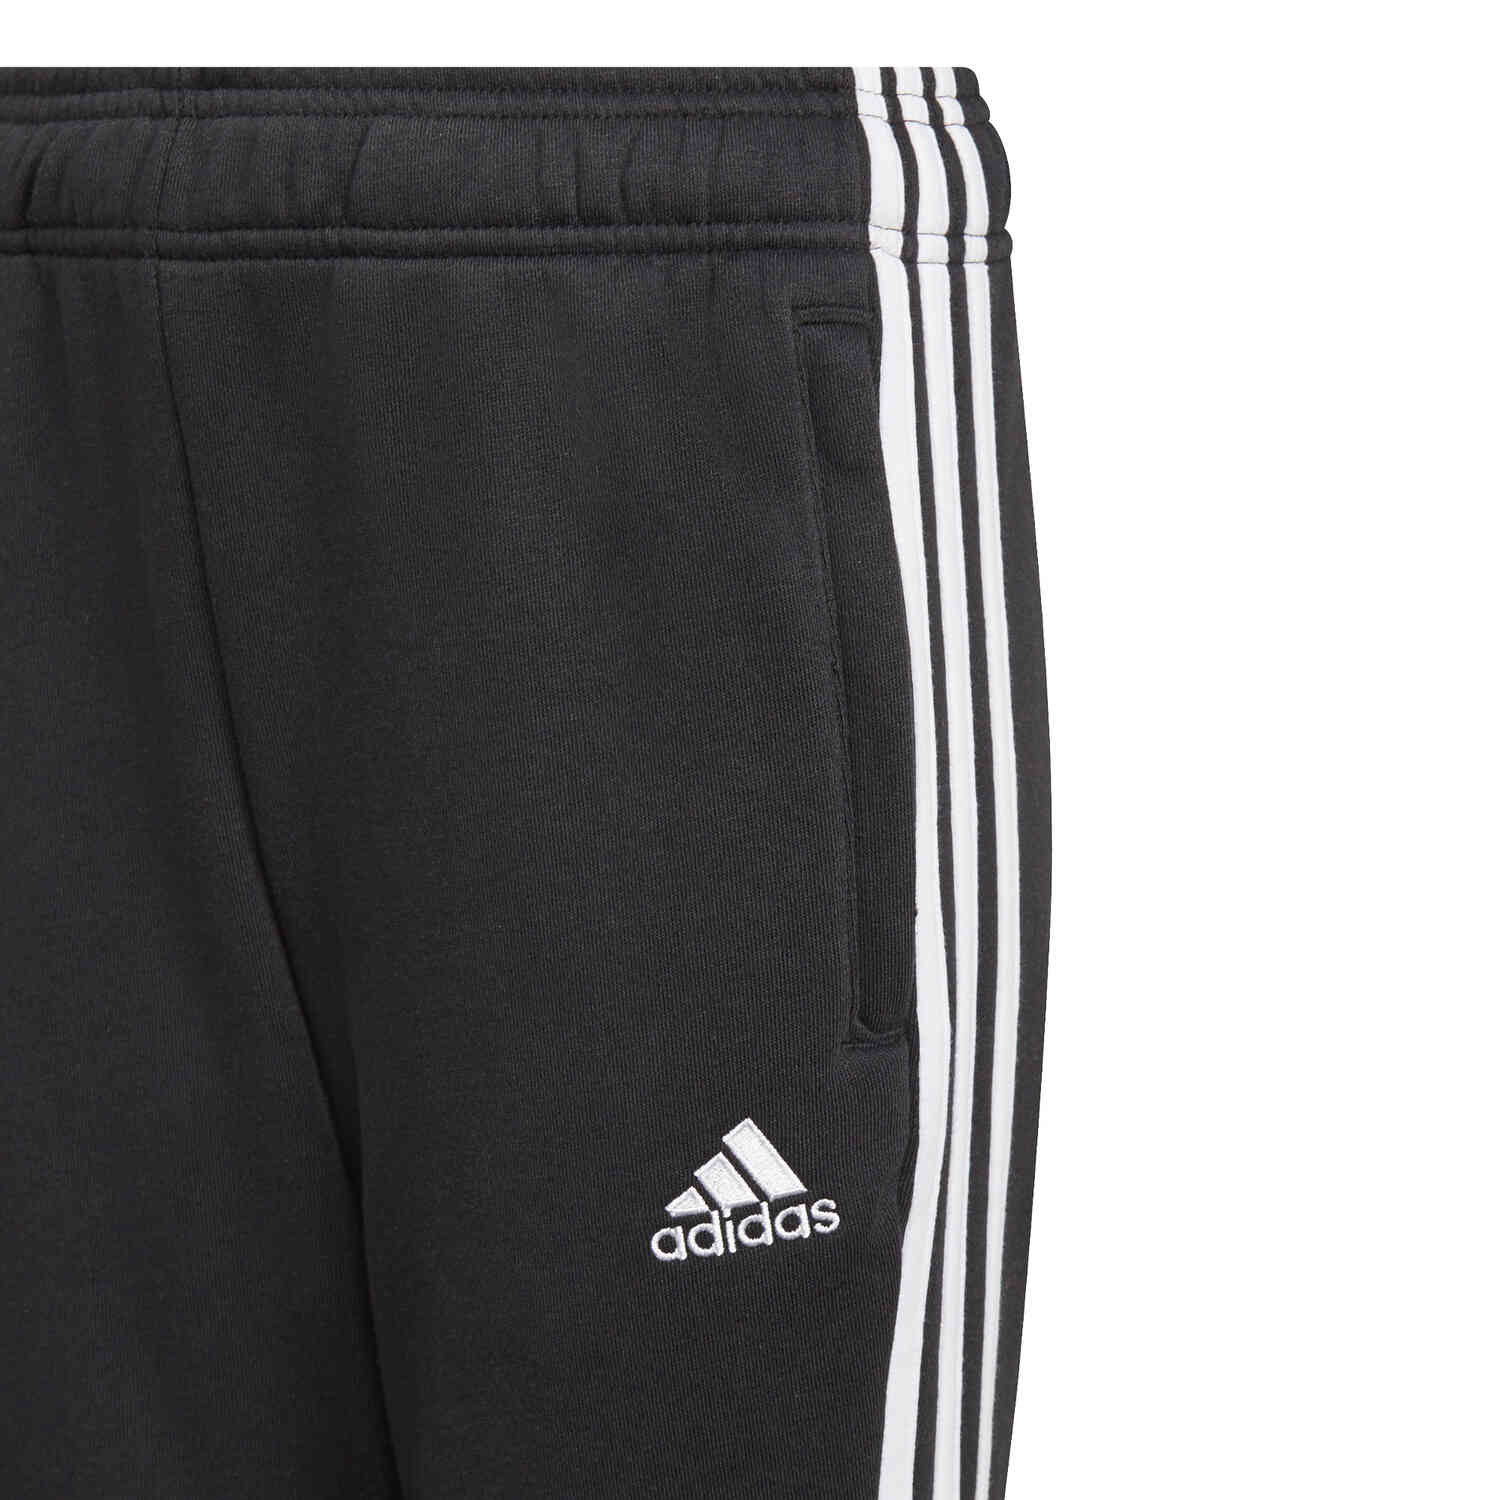 Kids adidas Juventus Sweat Pants - Black/White - Soccer Master